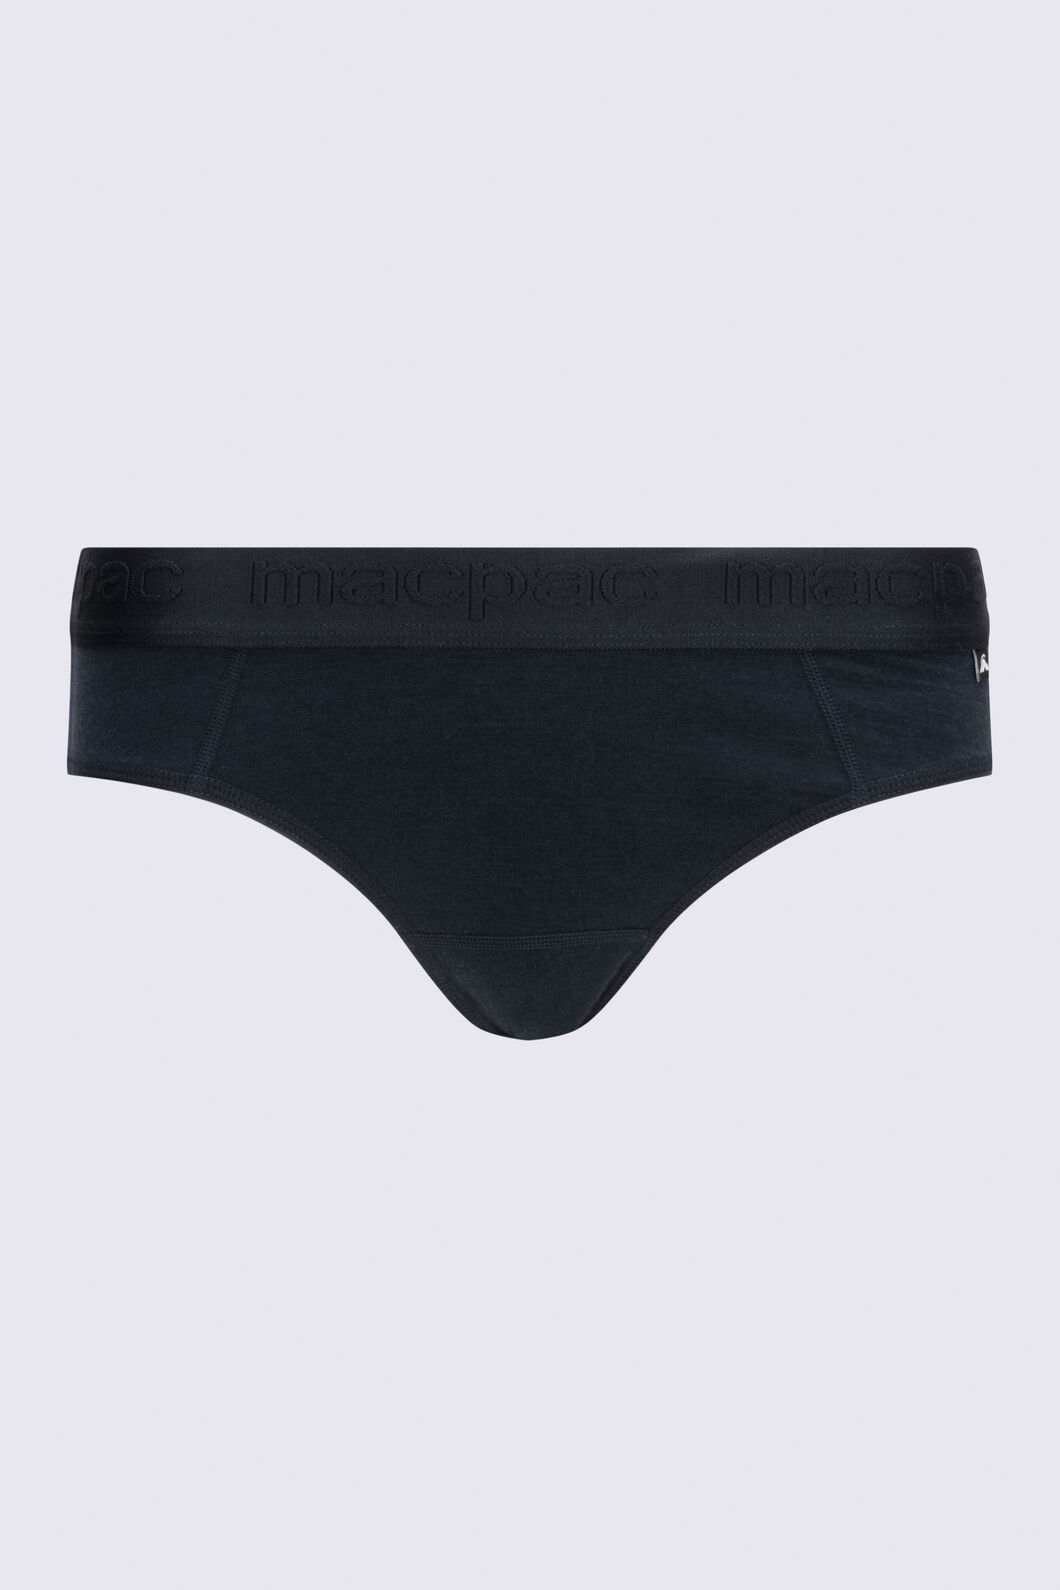 Mr Price - Meet your new everyday underwear – brighter